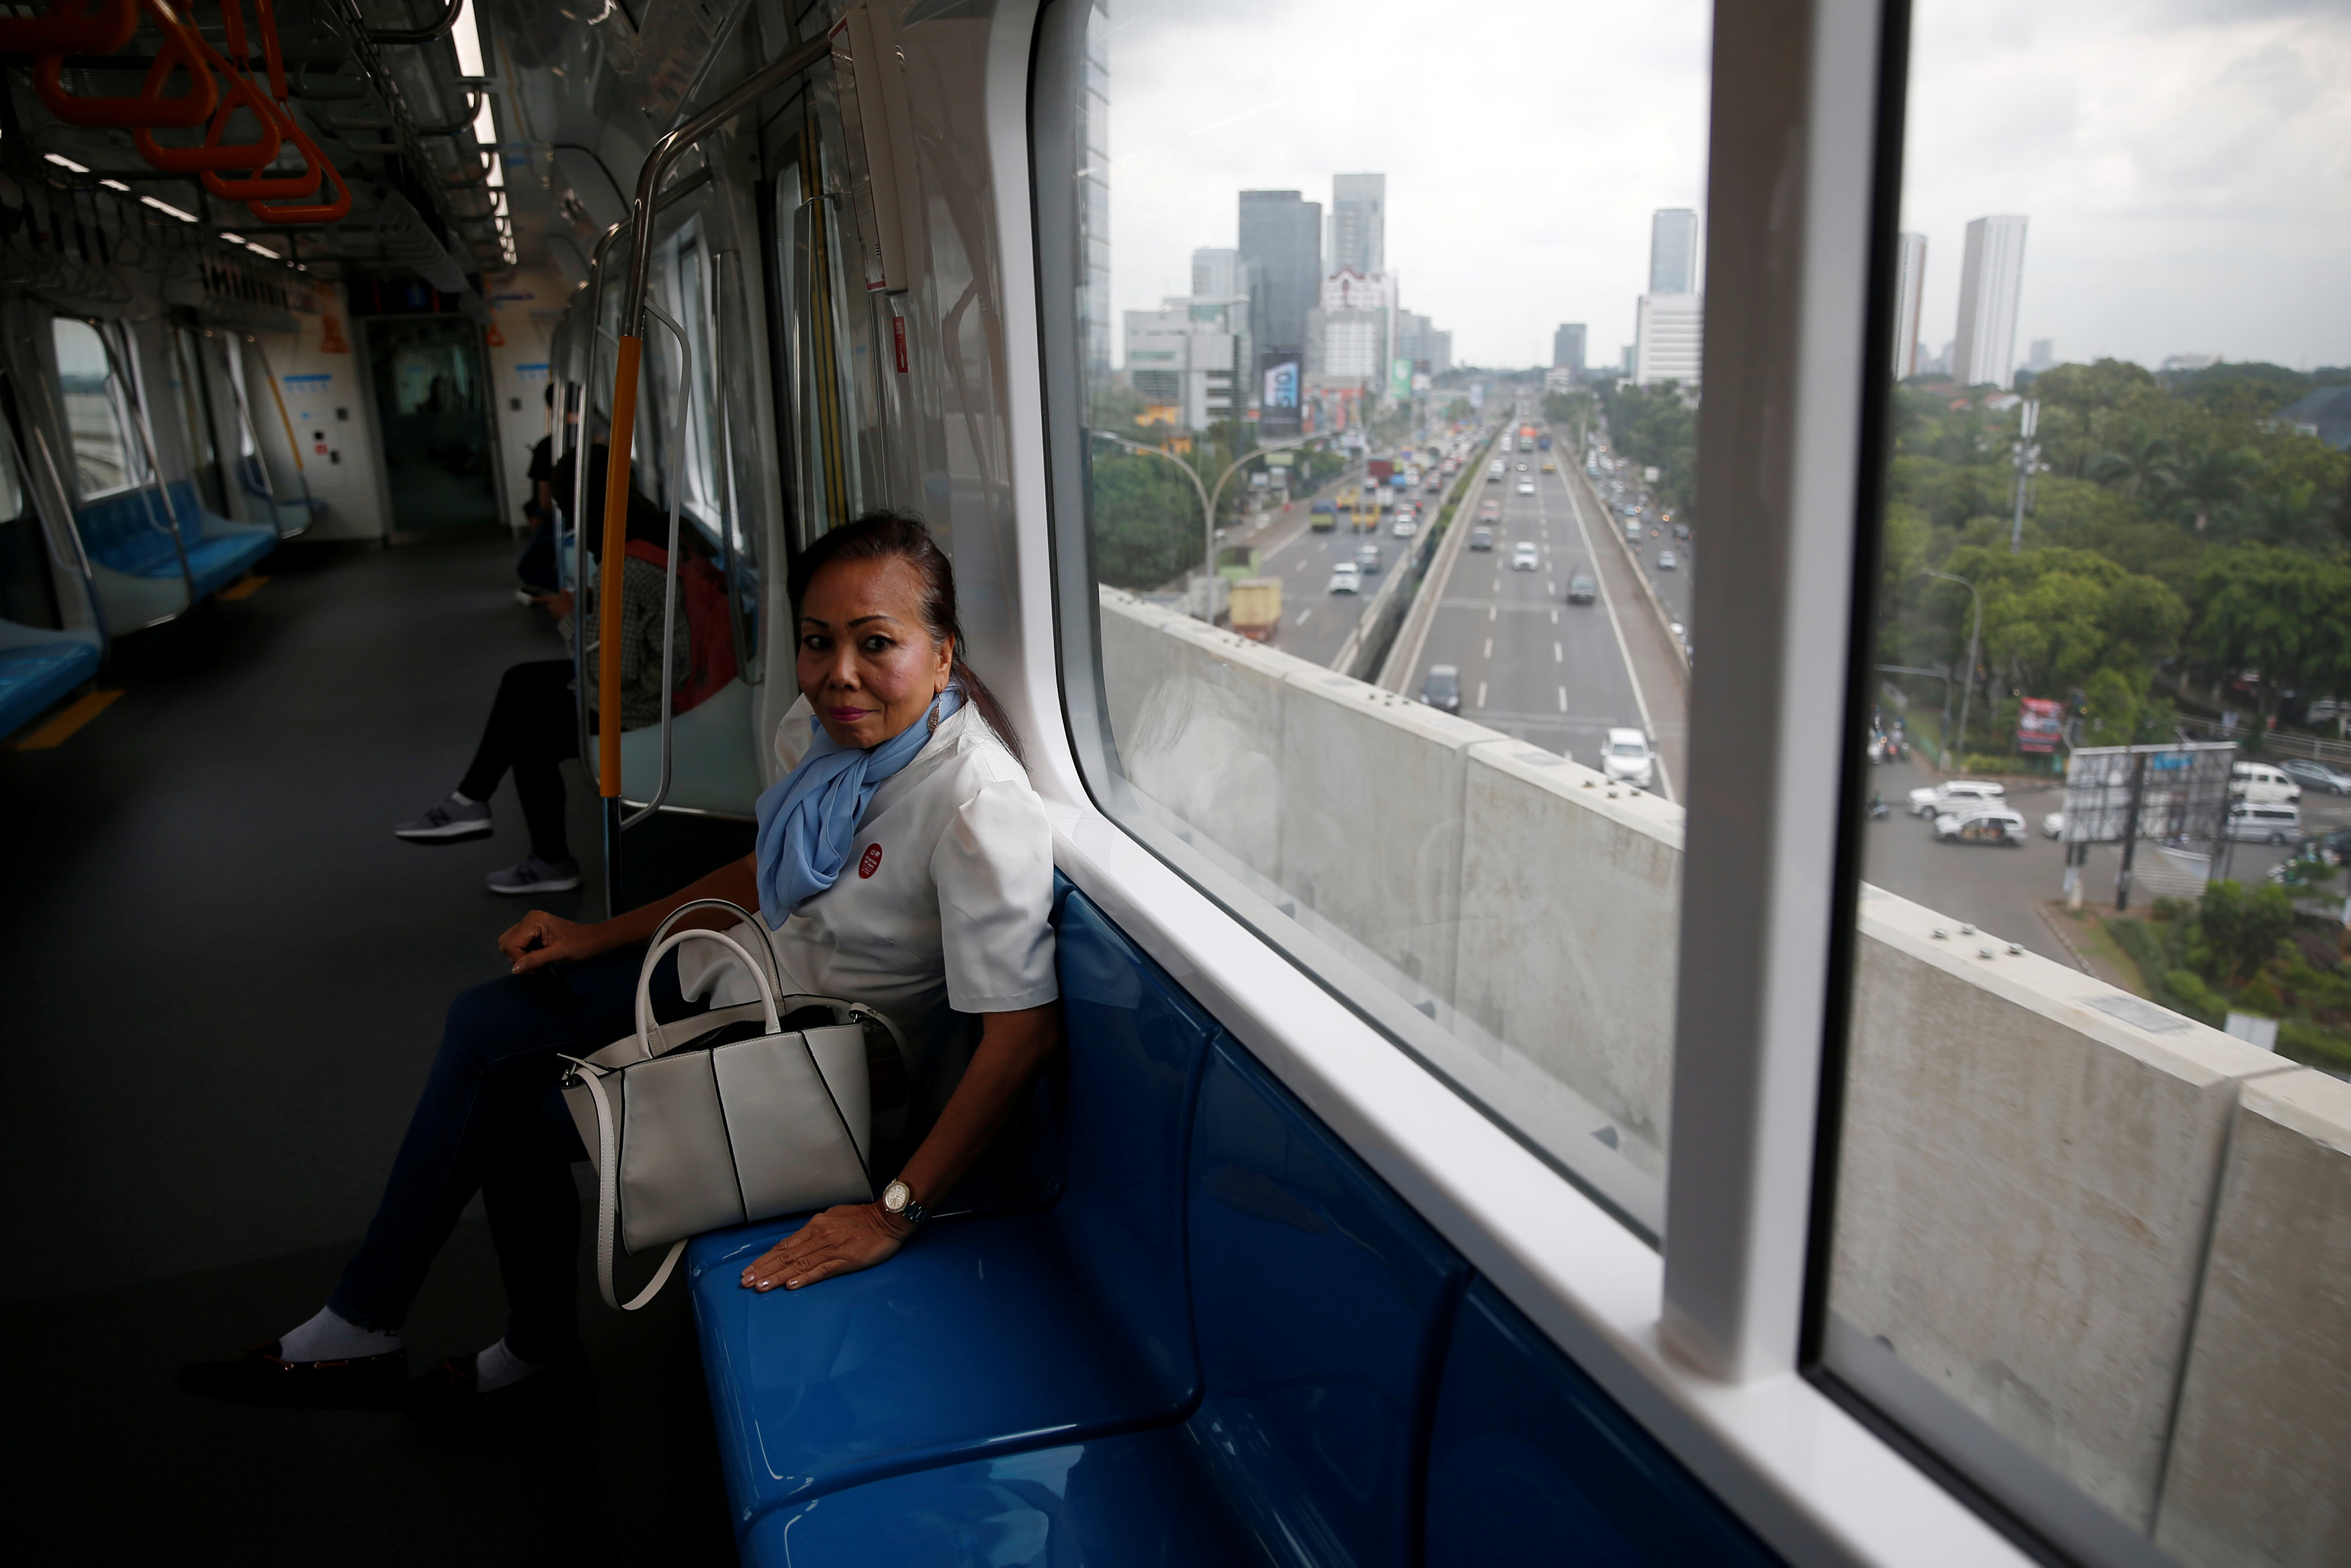 مواطنة تبدو سعيدة بتجربتها مع مترو الأنفاق فى أندونيسيا